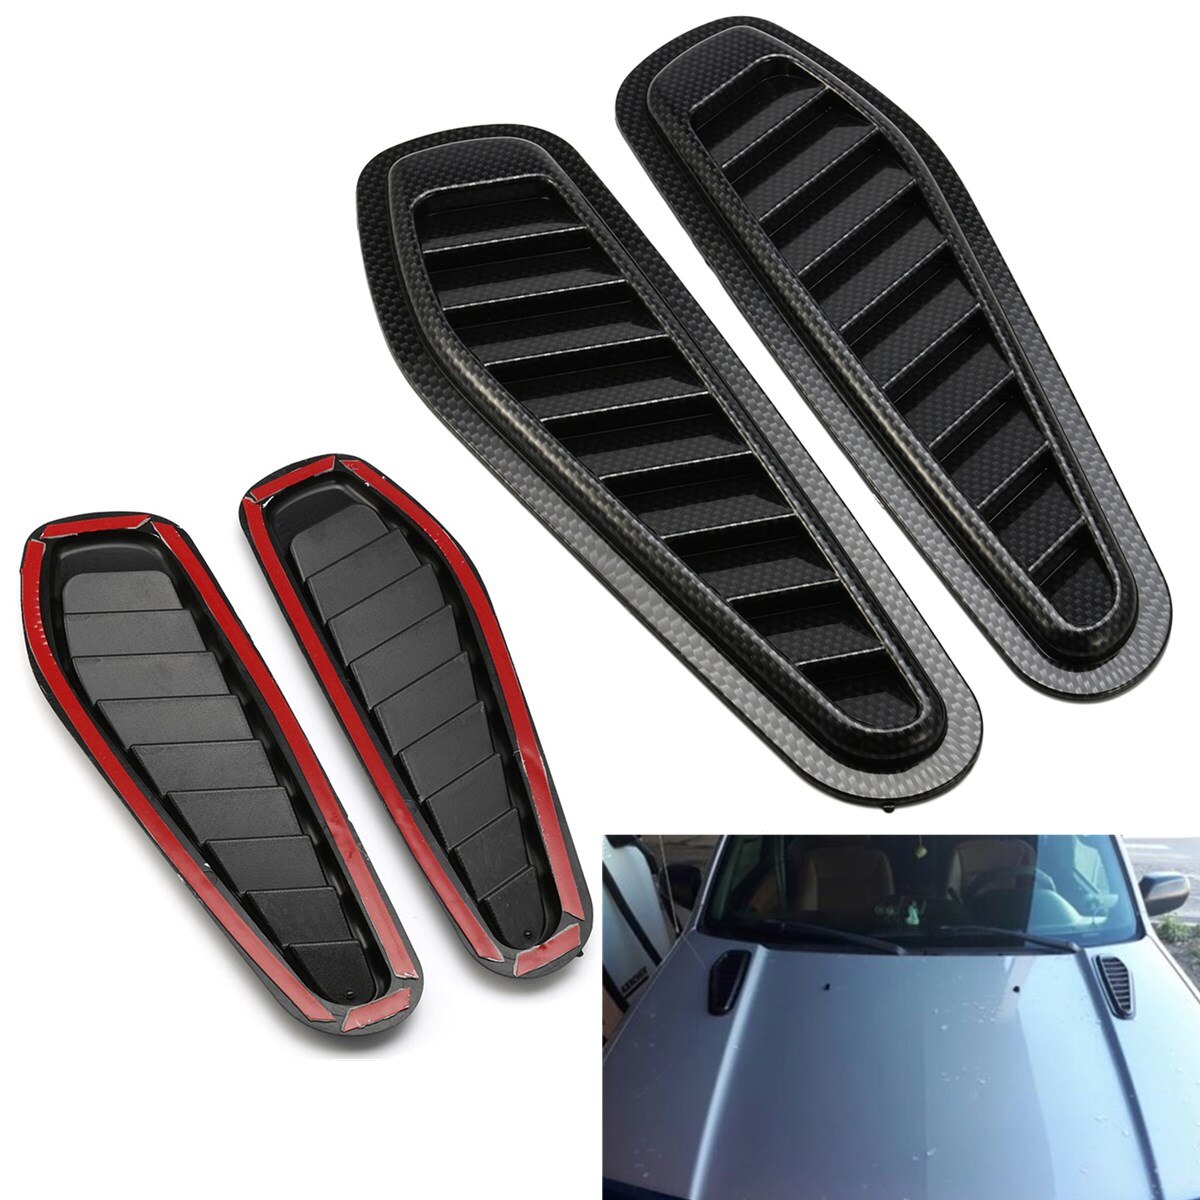 2 Stuks Black Carbon Fiber Look Decoratie Air Vent Universal Fit Voor De Meeste Auto 'S Installatie Plakband Base